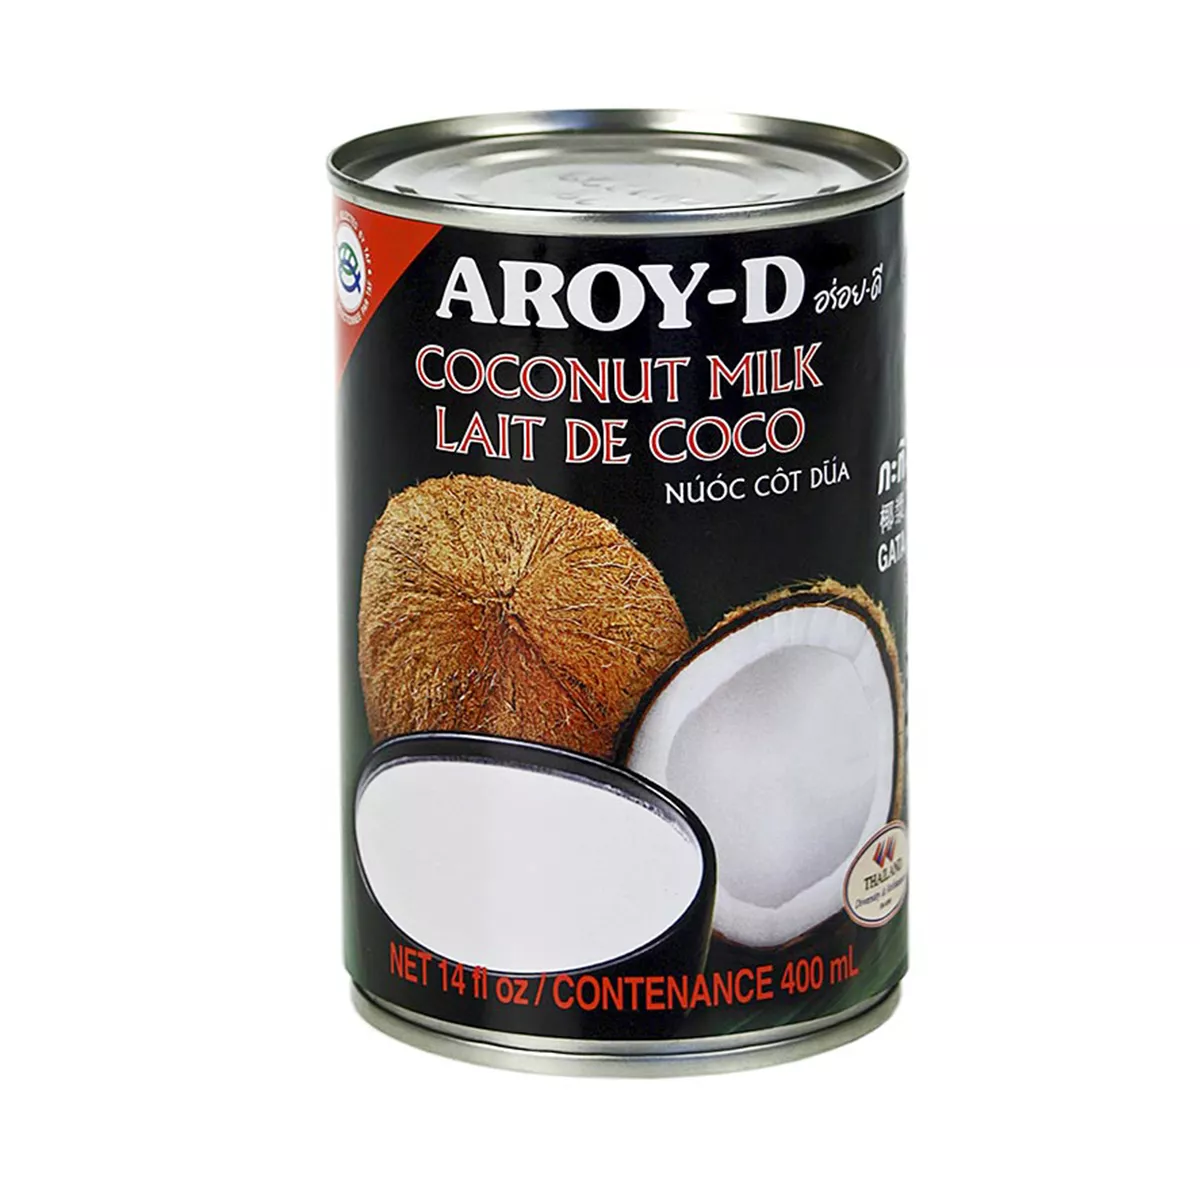 Lapte de cocos AROY-D 400ml, [],asianfood.ro